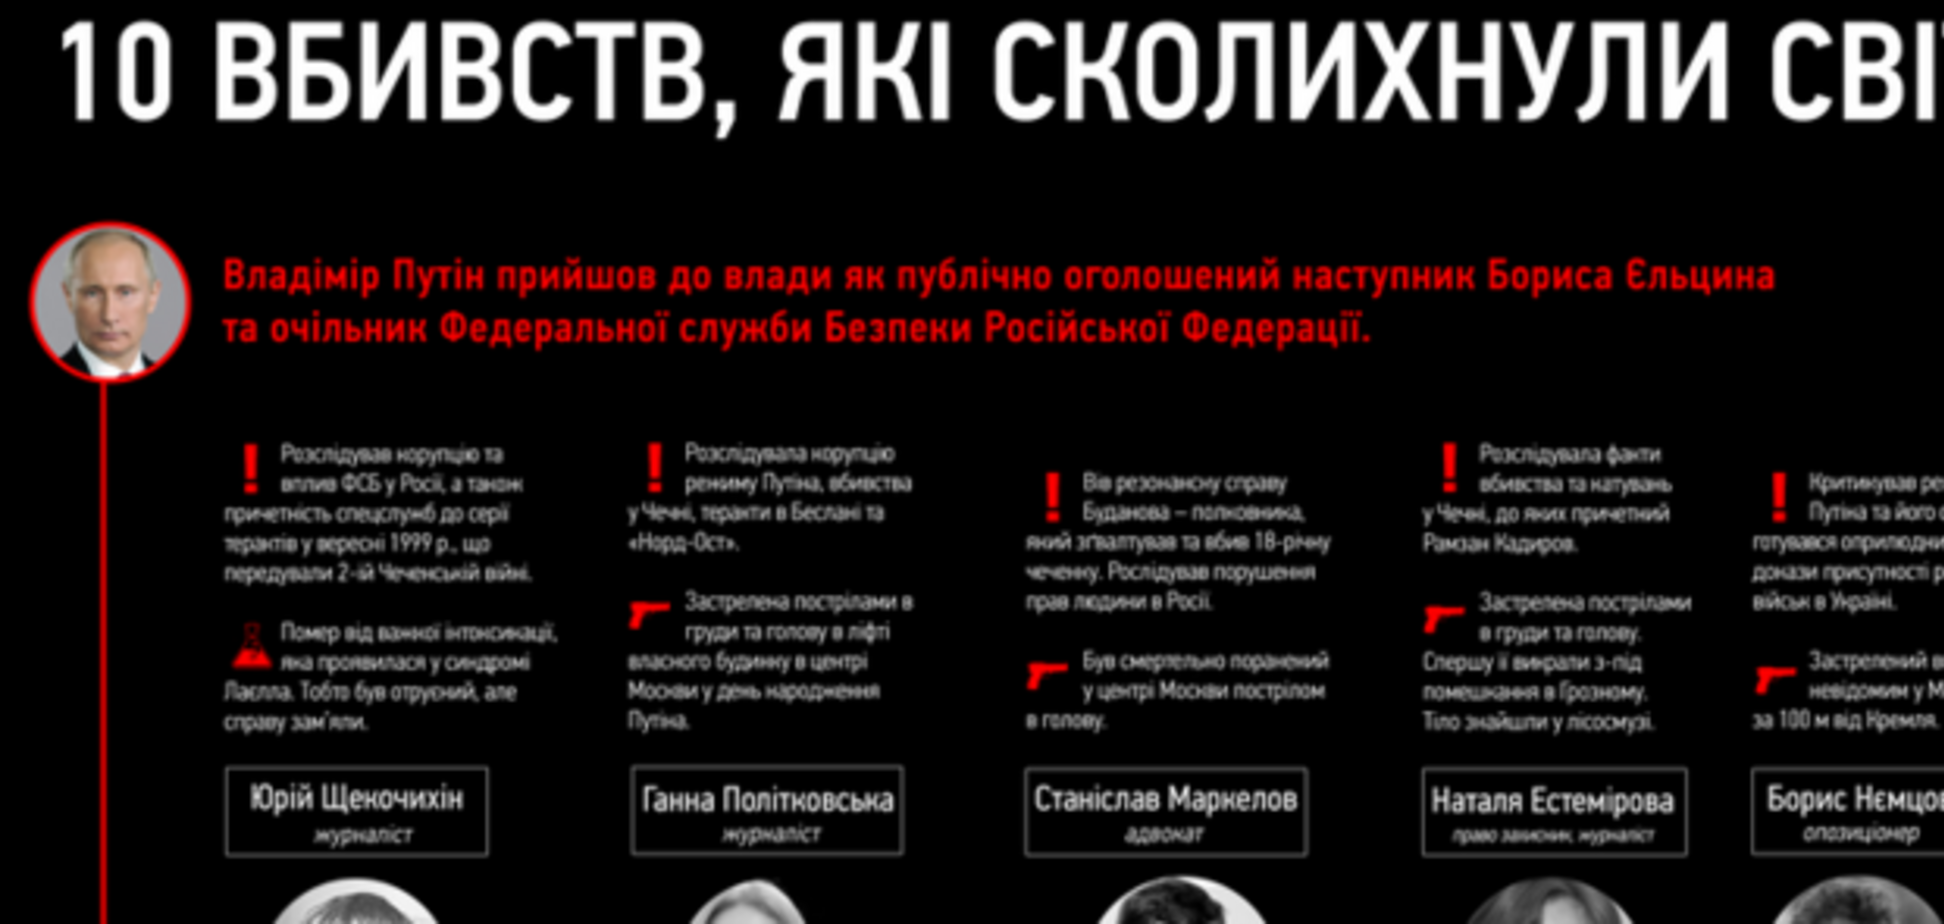 10 громких убийств в России, кровавый след которых ведет к Путину: инфографика